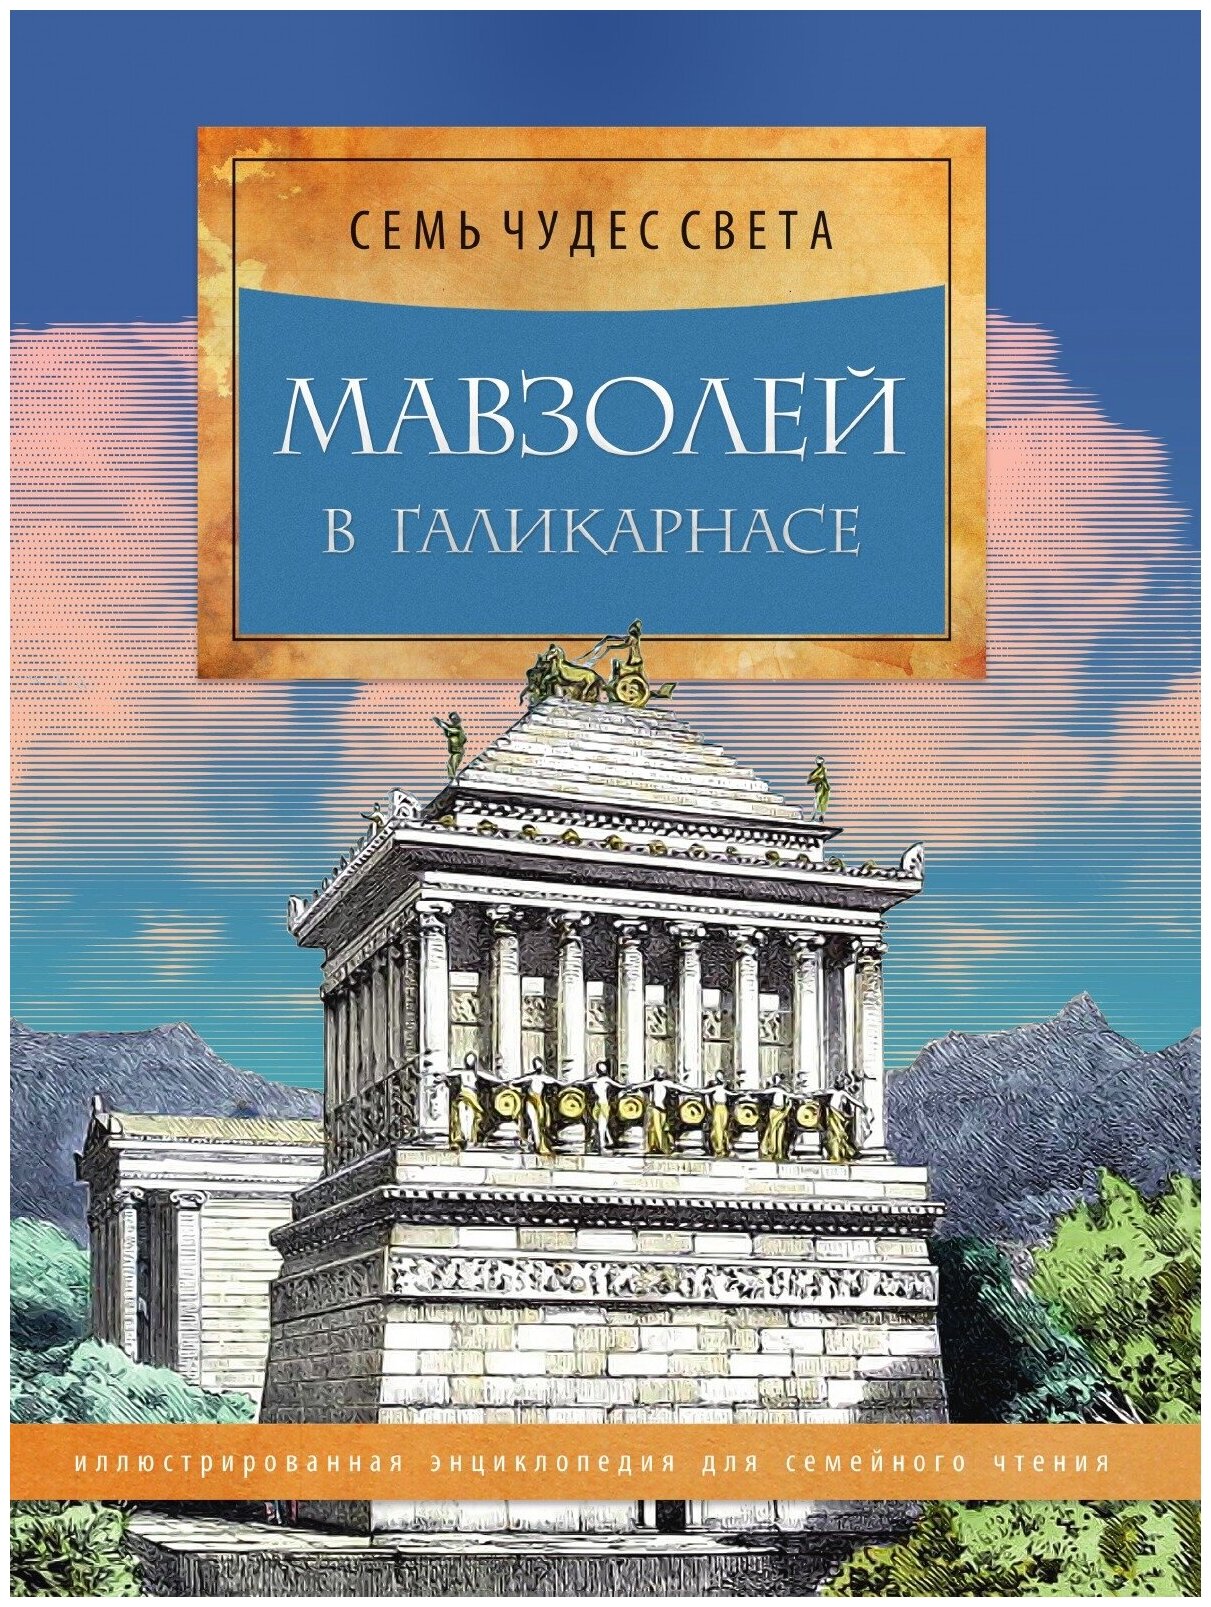 Мавзолей в Галикарнасе. Иллюстрированная энциклопедия для семейного чтения